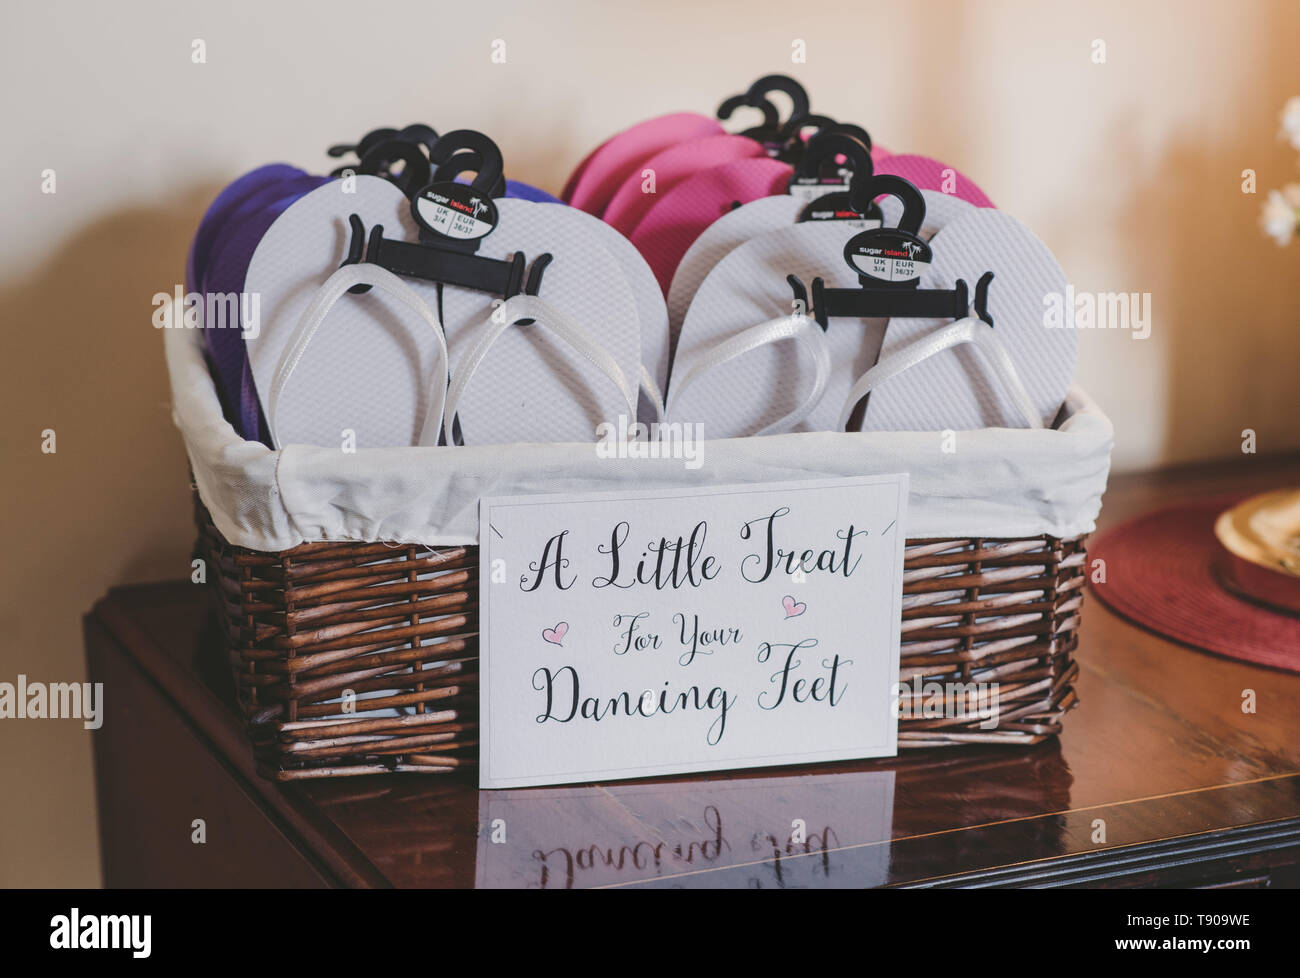 Wedding Flip Flops Stock Photo - Download Image Now - Flip-Flop